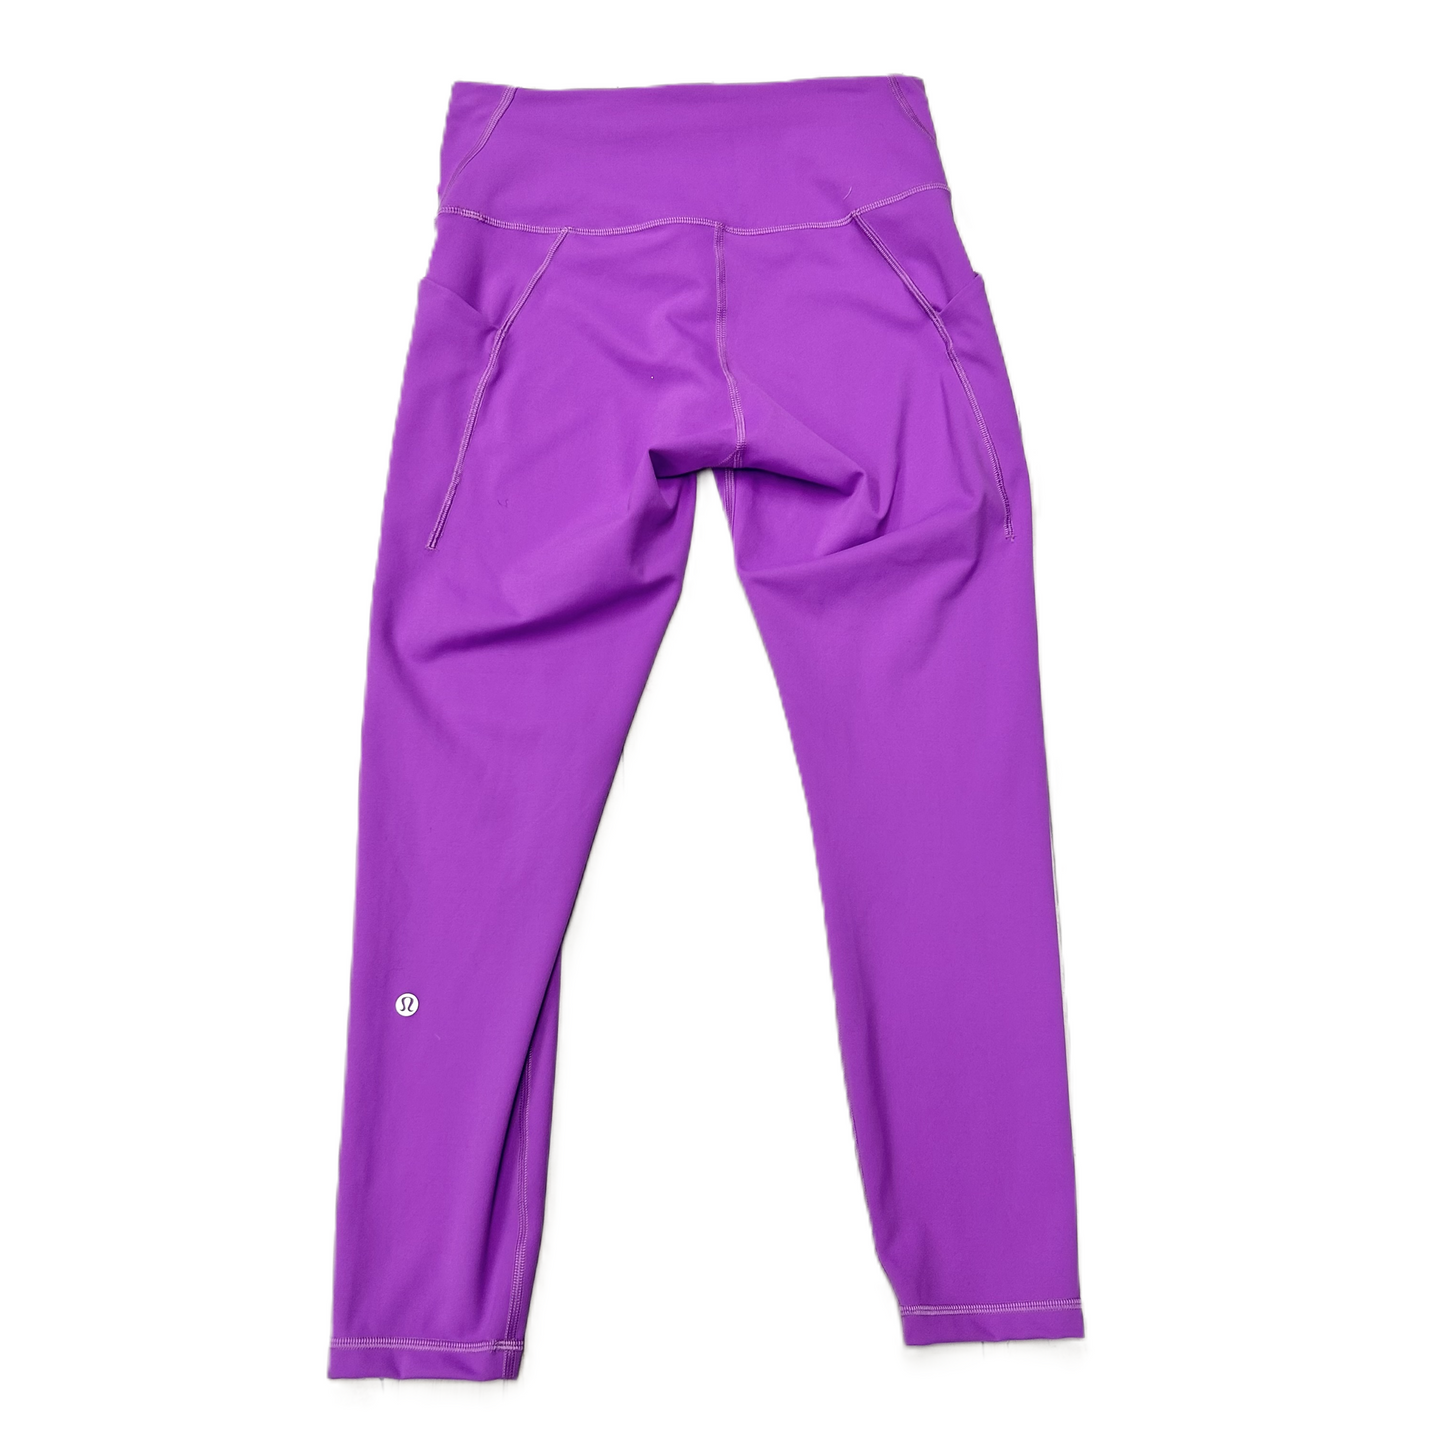 Purple Athletic Capris By Lululemon, Size: 10